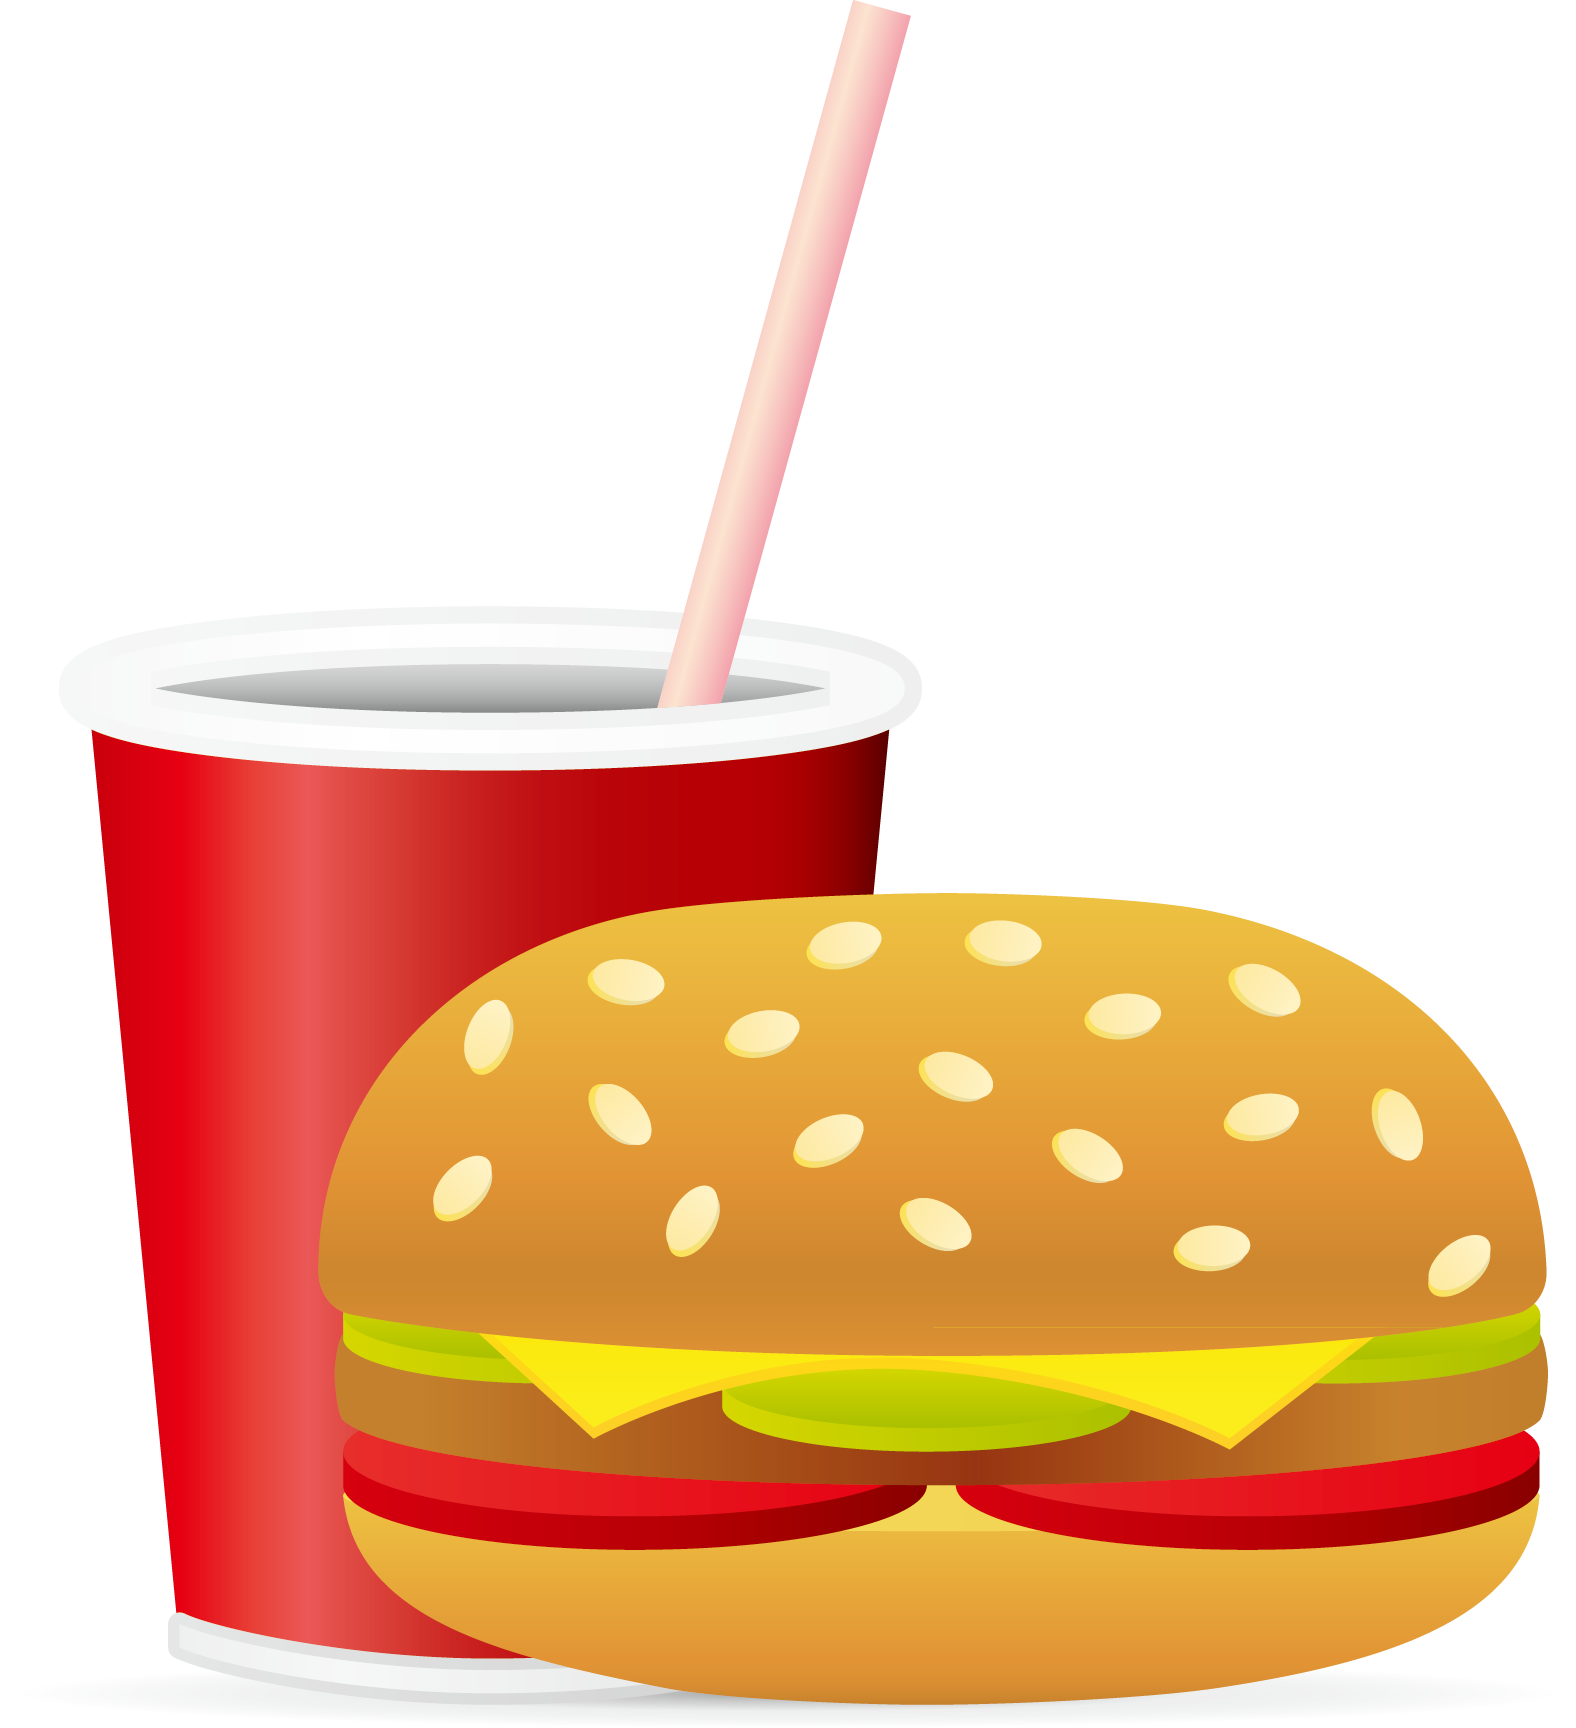 Soft Drink Hamburger Fast Food Junk Food French Fries - Soft Drink Hamburger Fast Food Junk Food French Fries (1576x1728)